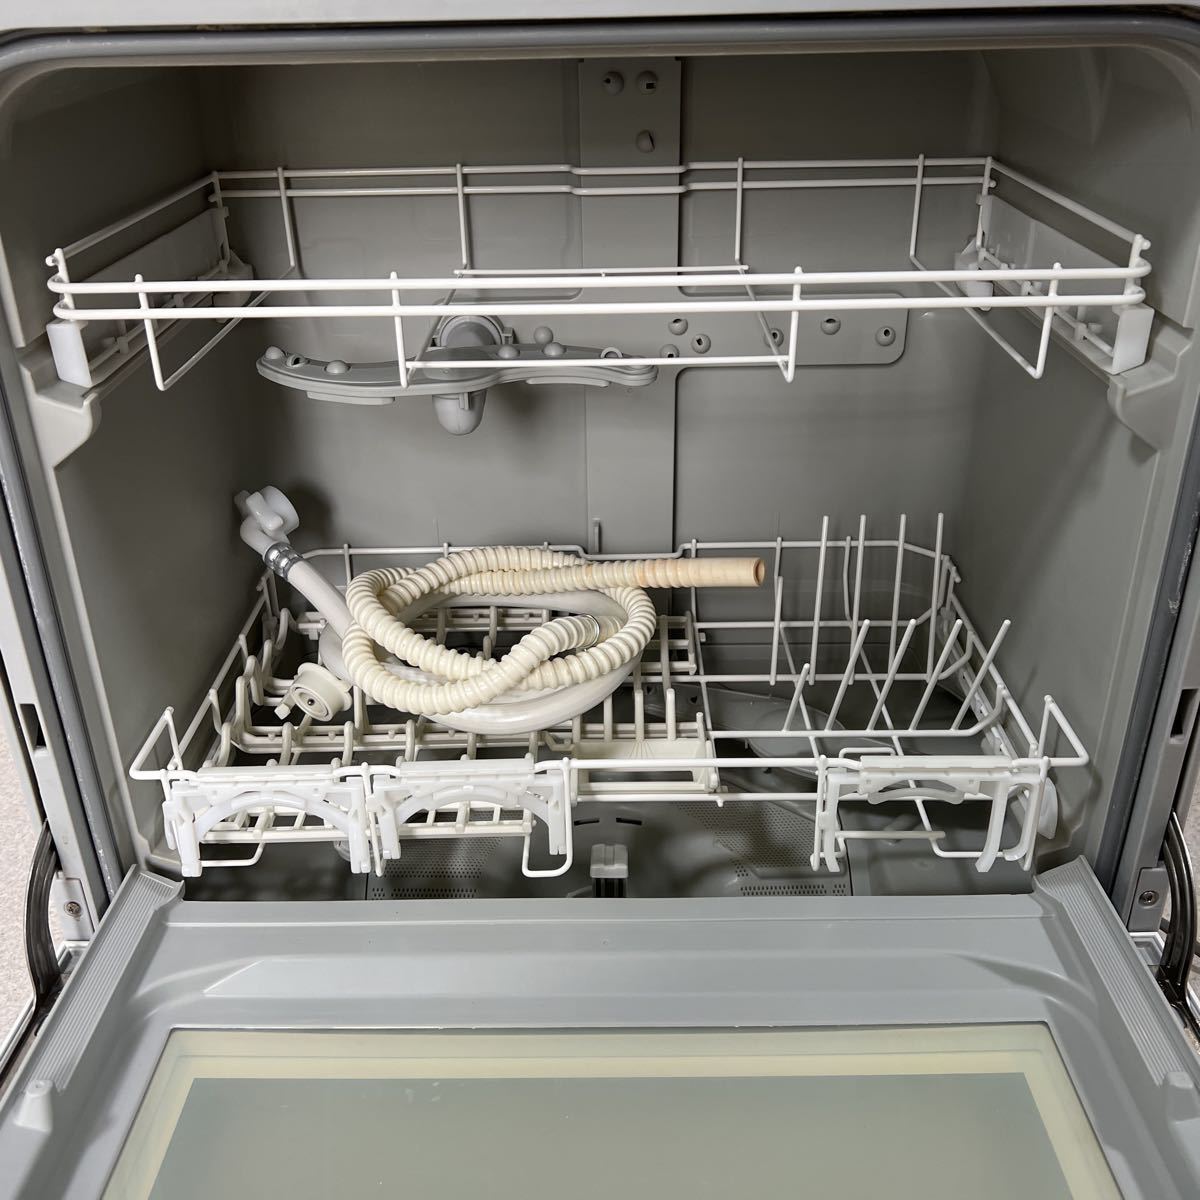 2021年製 パナソニック NP-TH4-W 食器洗い乾燥機 ホワイト 5人用 食洗